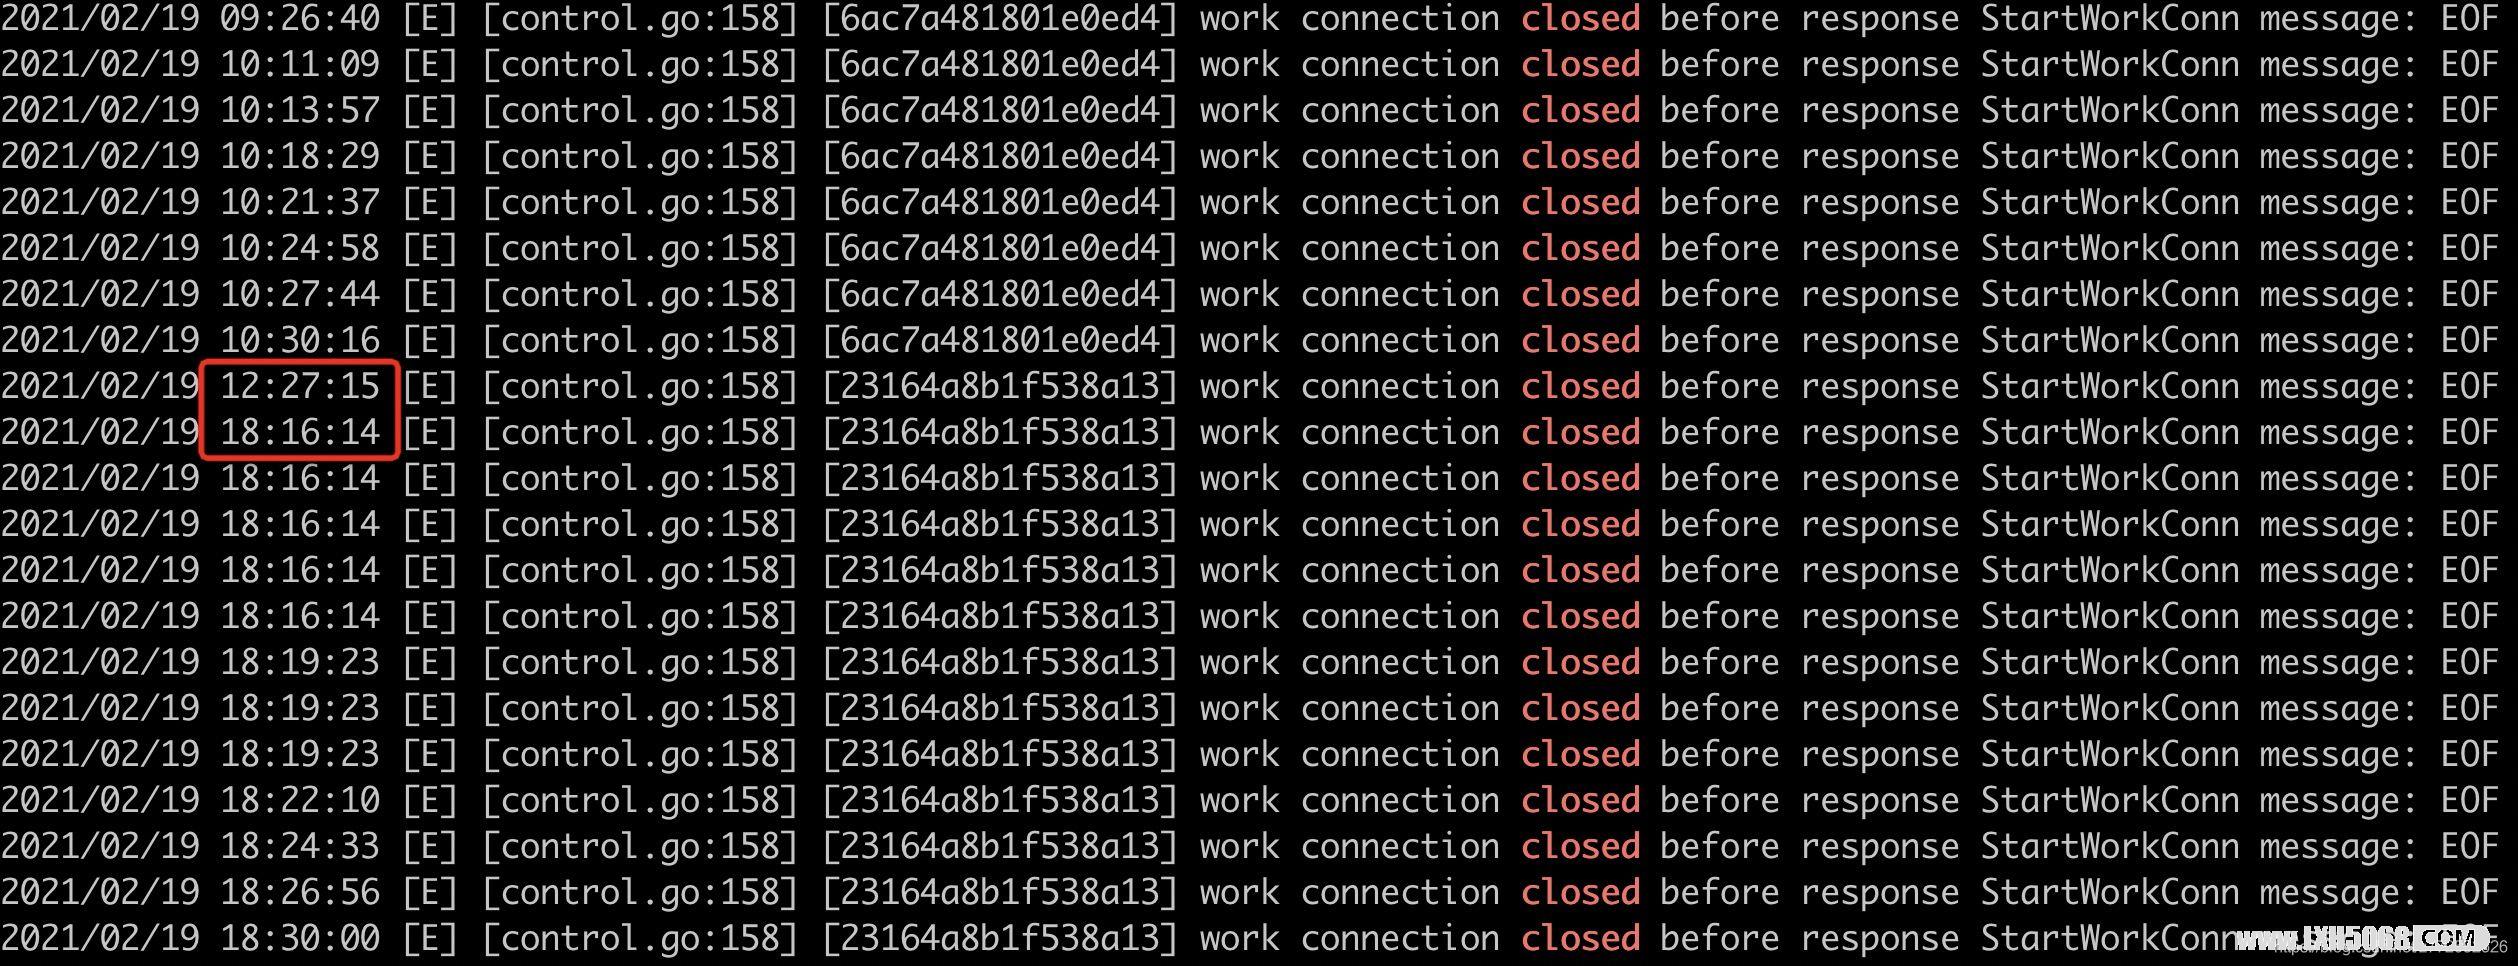 解决FRPS间歇性断开的问题 work connection closed before response StartWorkConn message: EOF